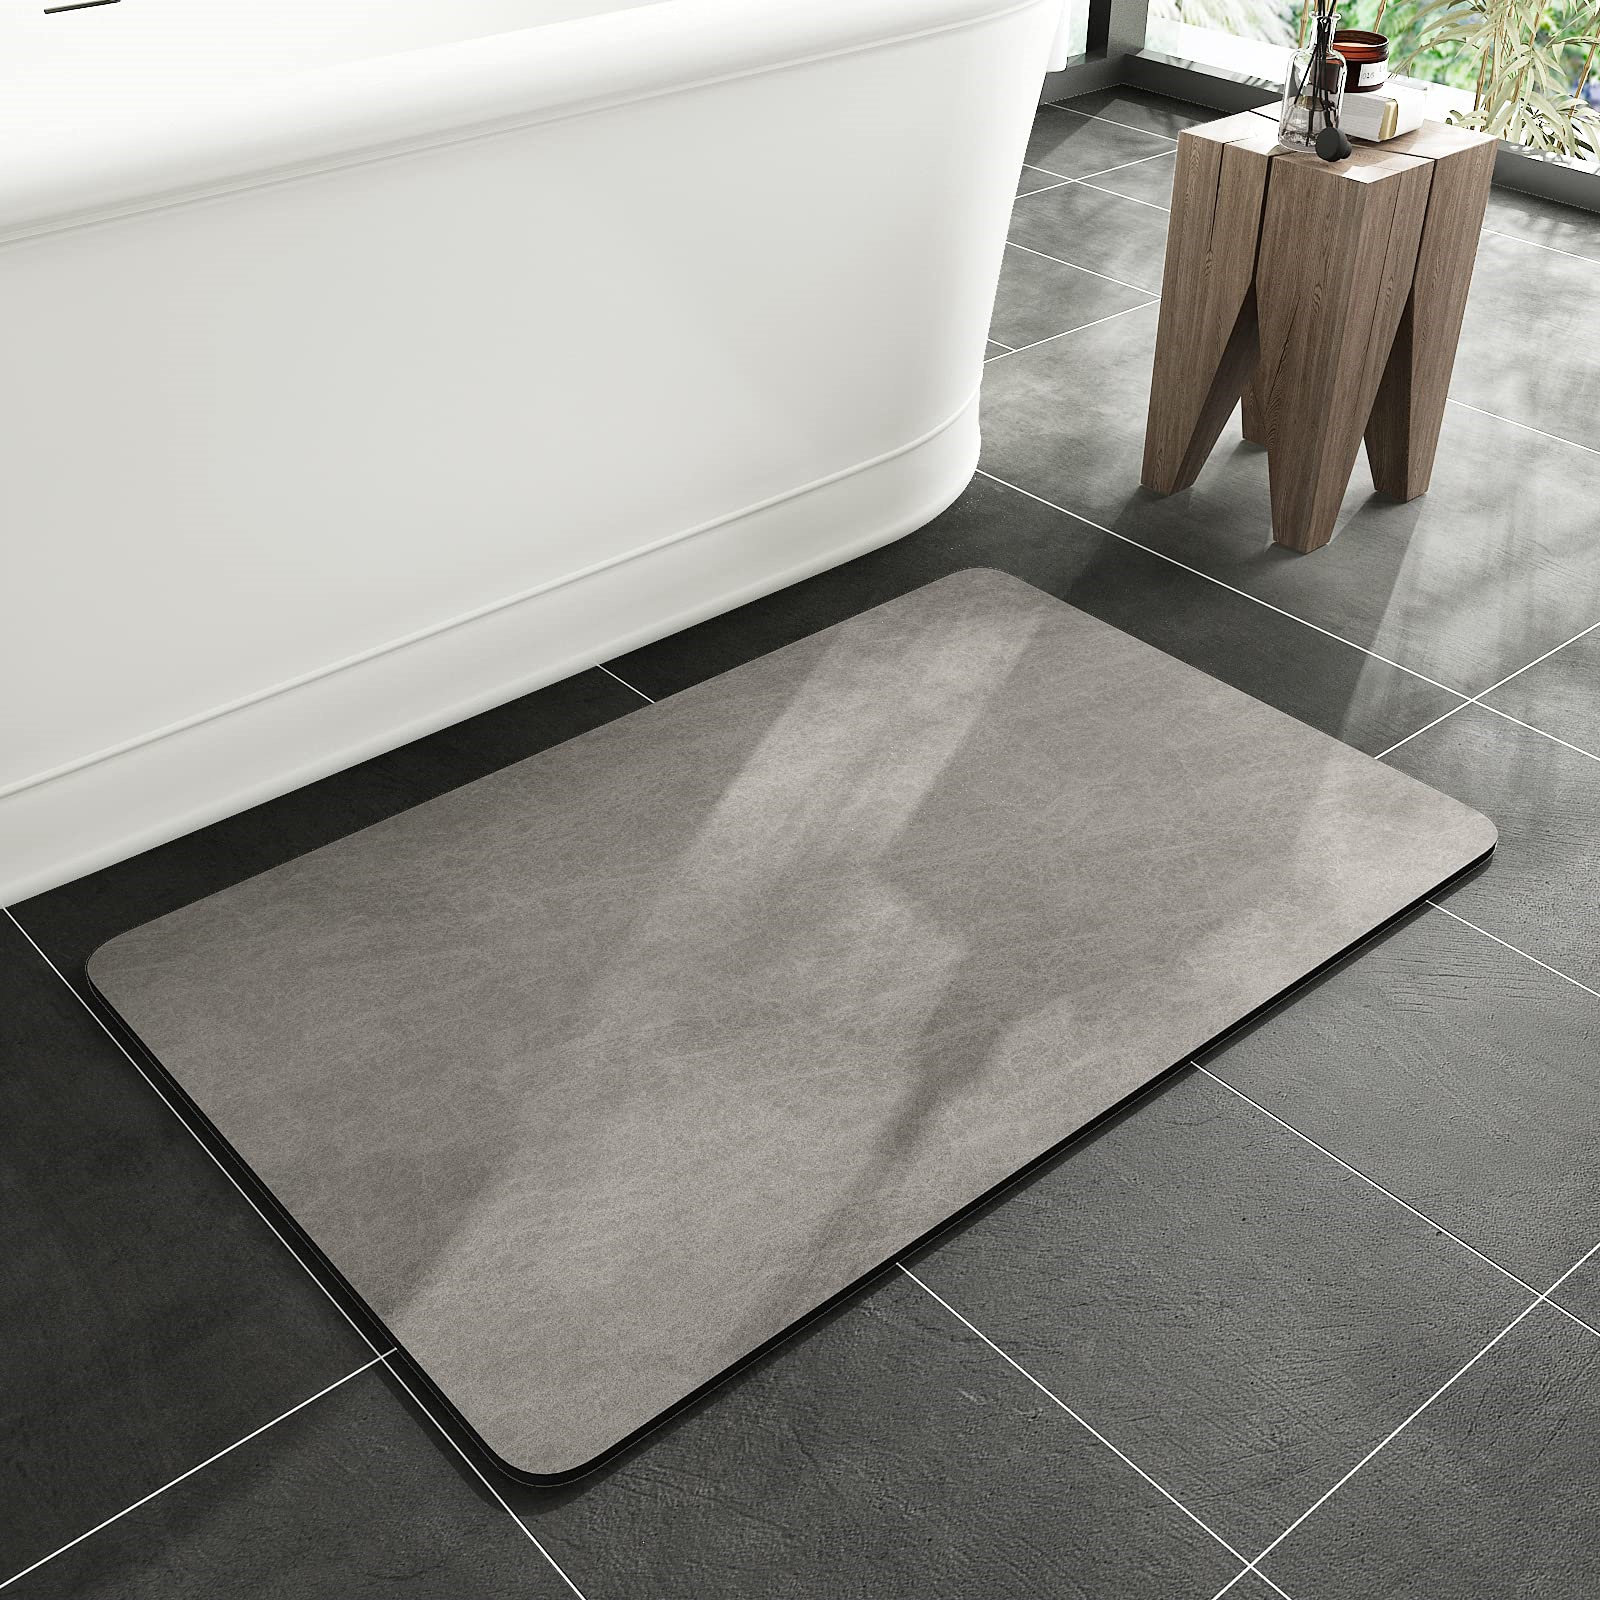 Wet Floor Non-Slip Bathroom Mat for Elderly & Kids, Bath Mats for